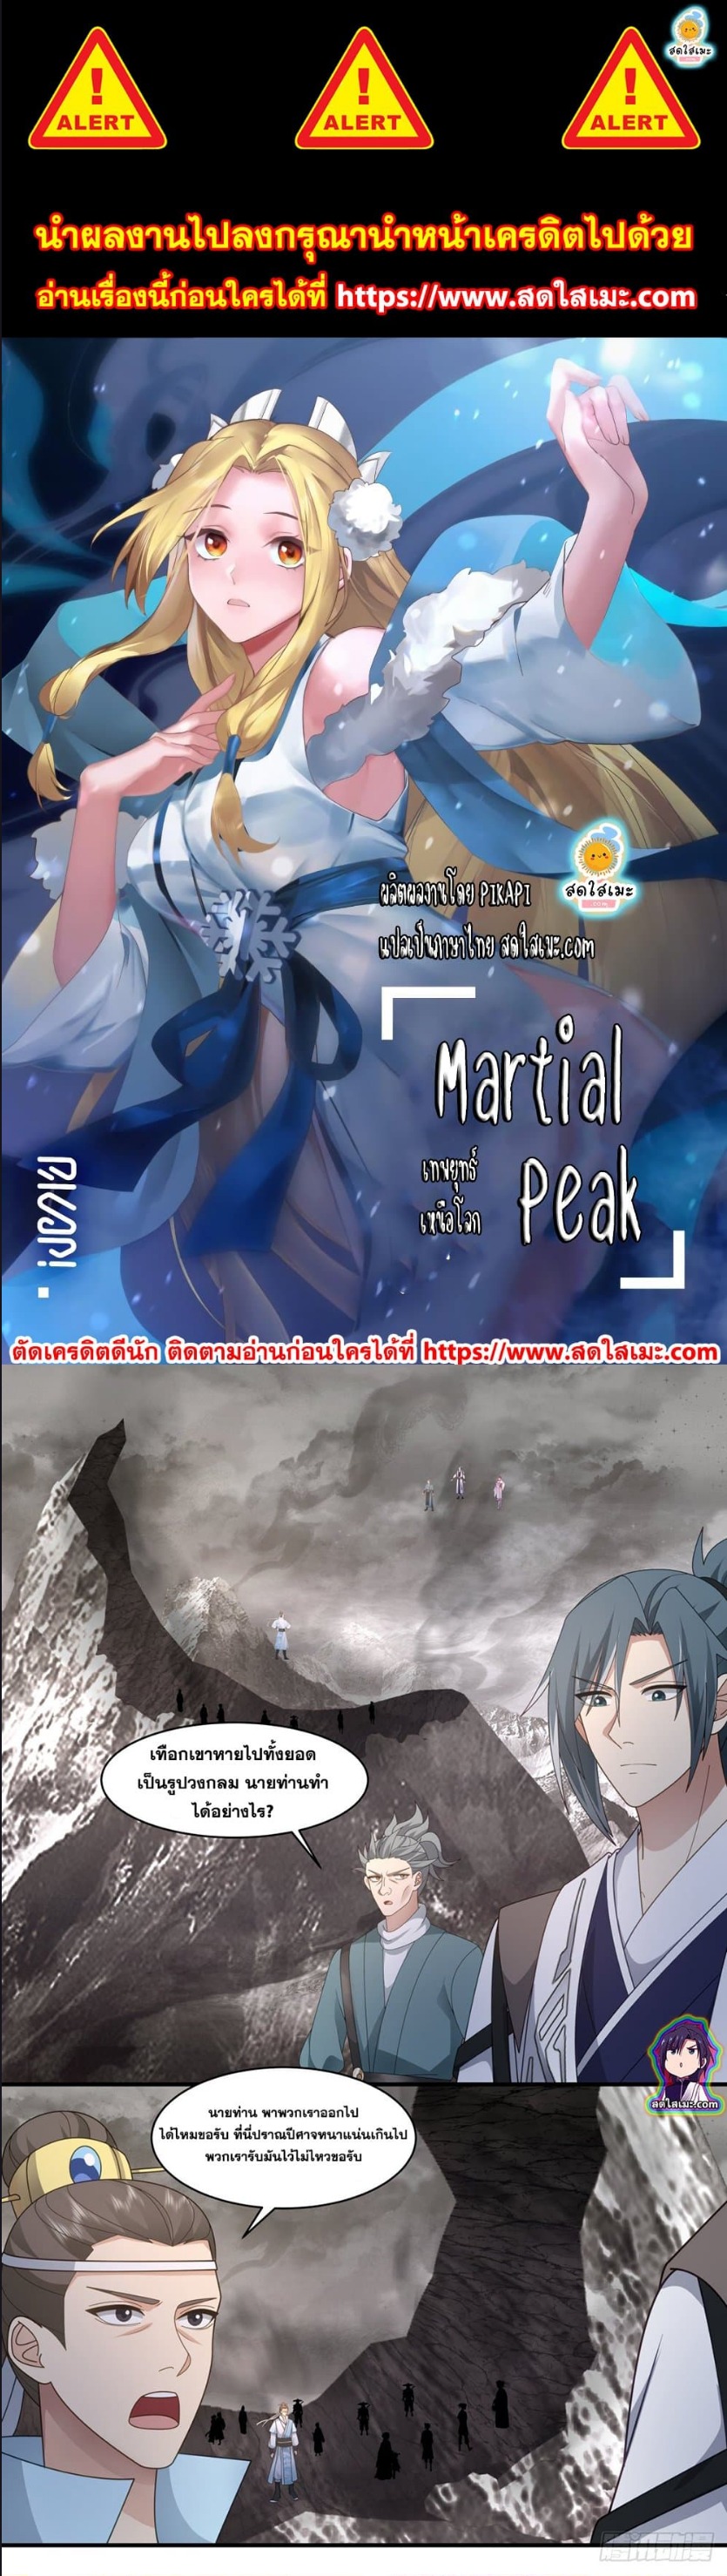 Martial Peak2516 (1)